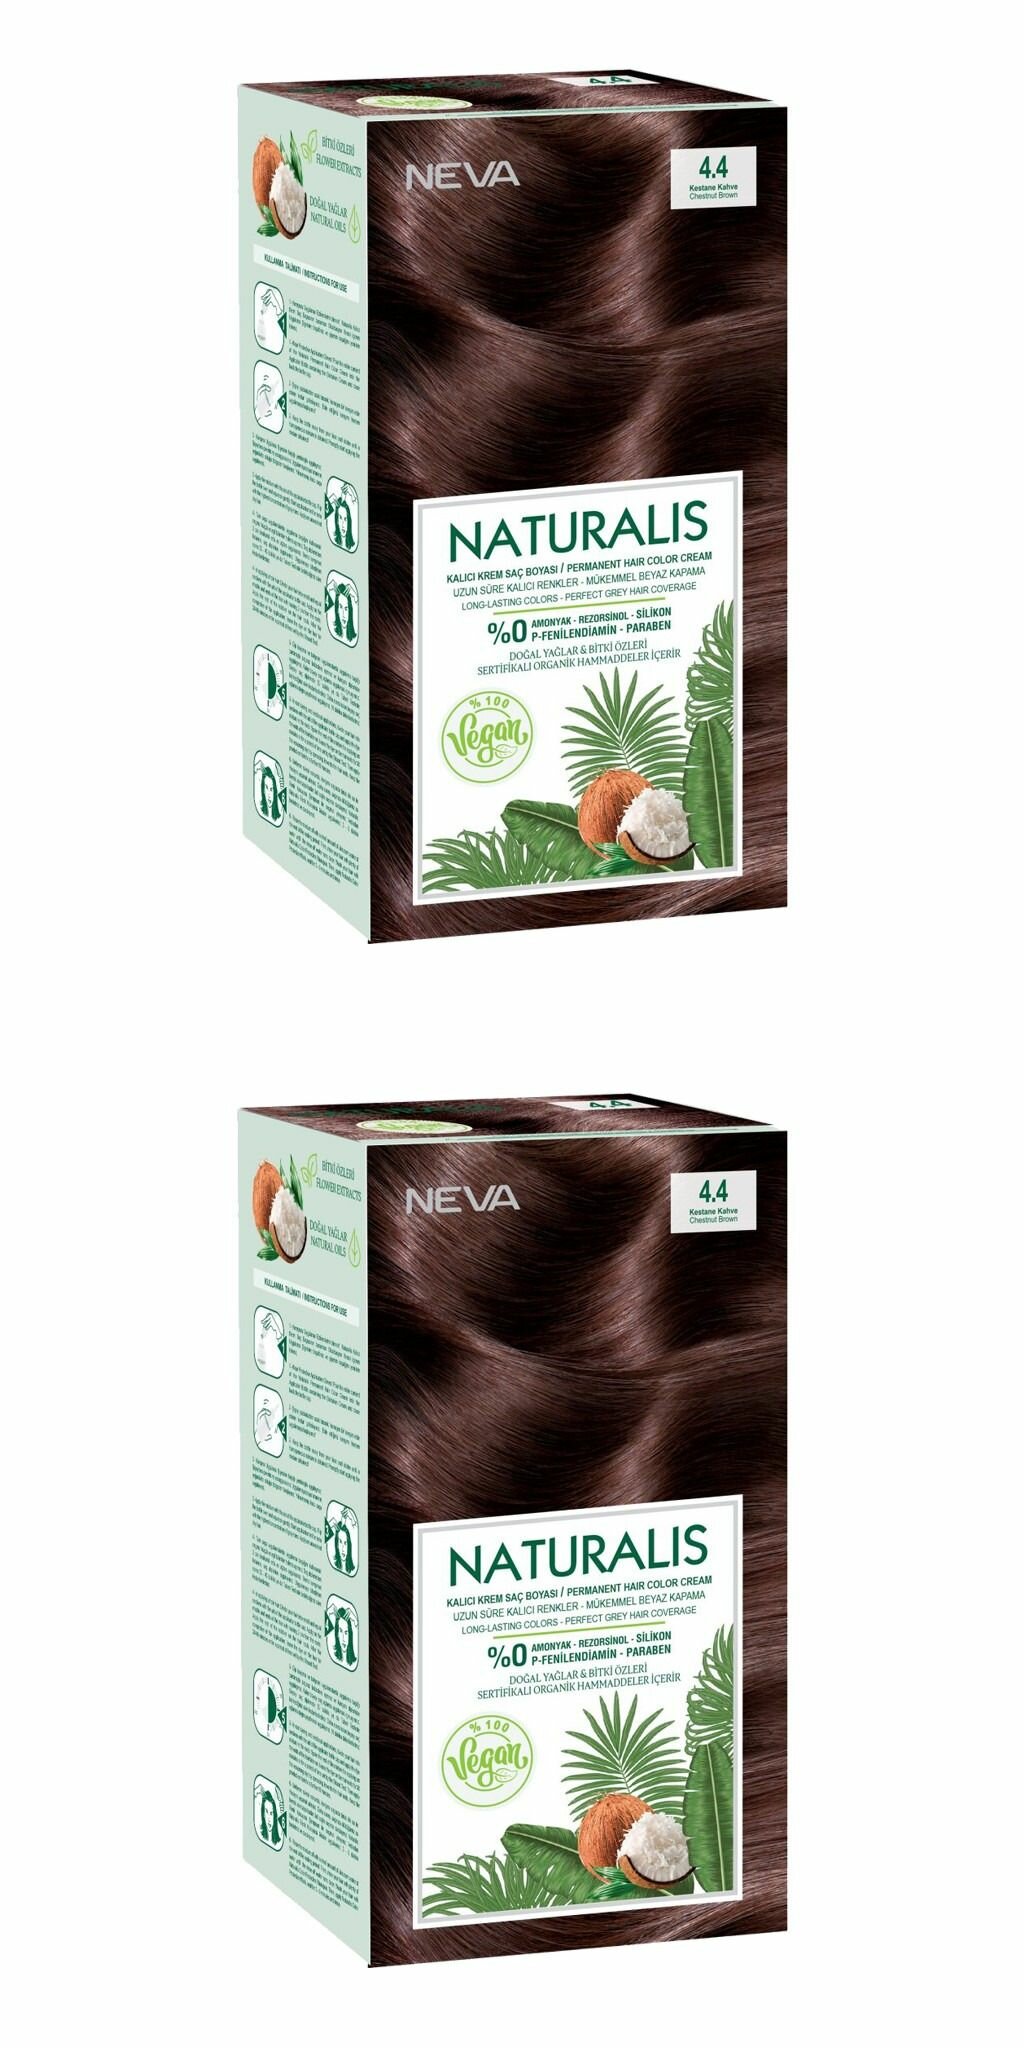 Naturalis Стойкая крем-краска для волос Vegan, Chestnut Brown 4.4, Кофейный каштан, 2 шт.